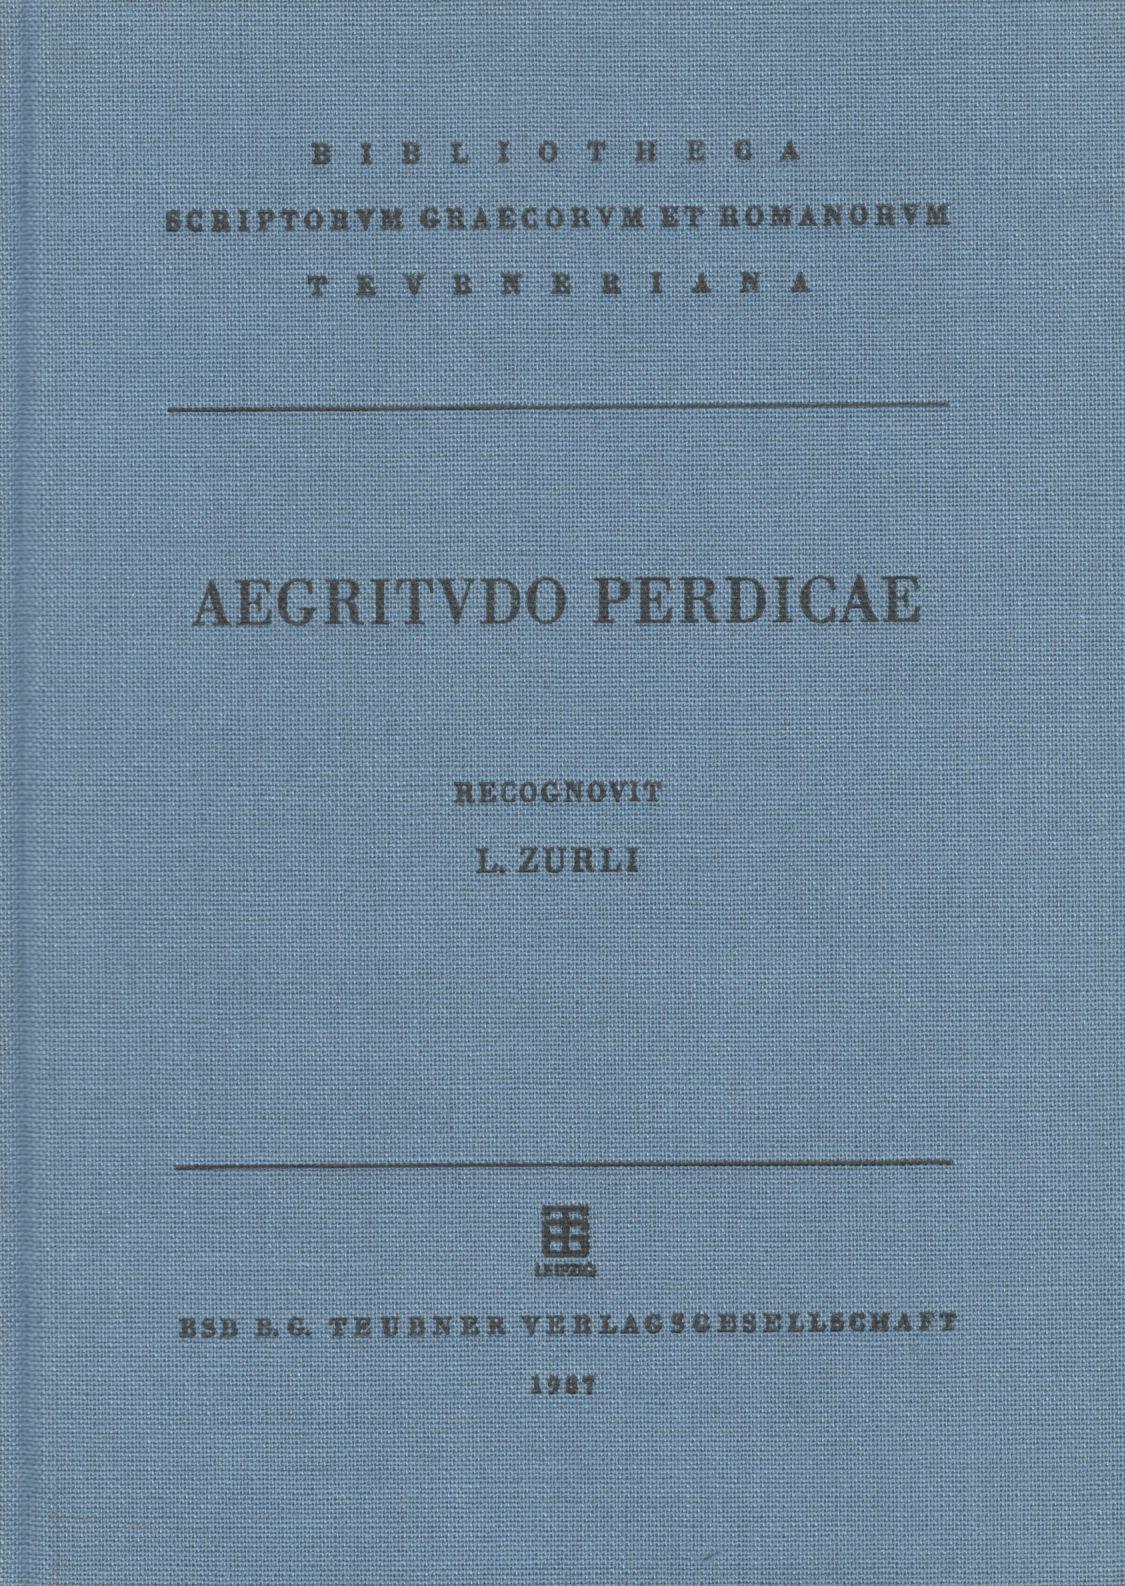 AEGRITUDO PERDICAE